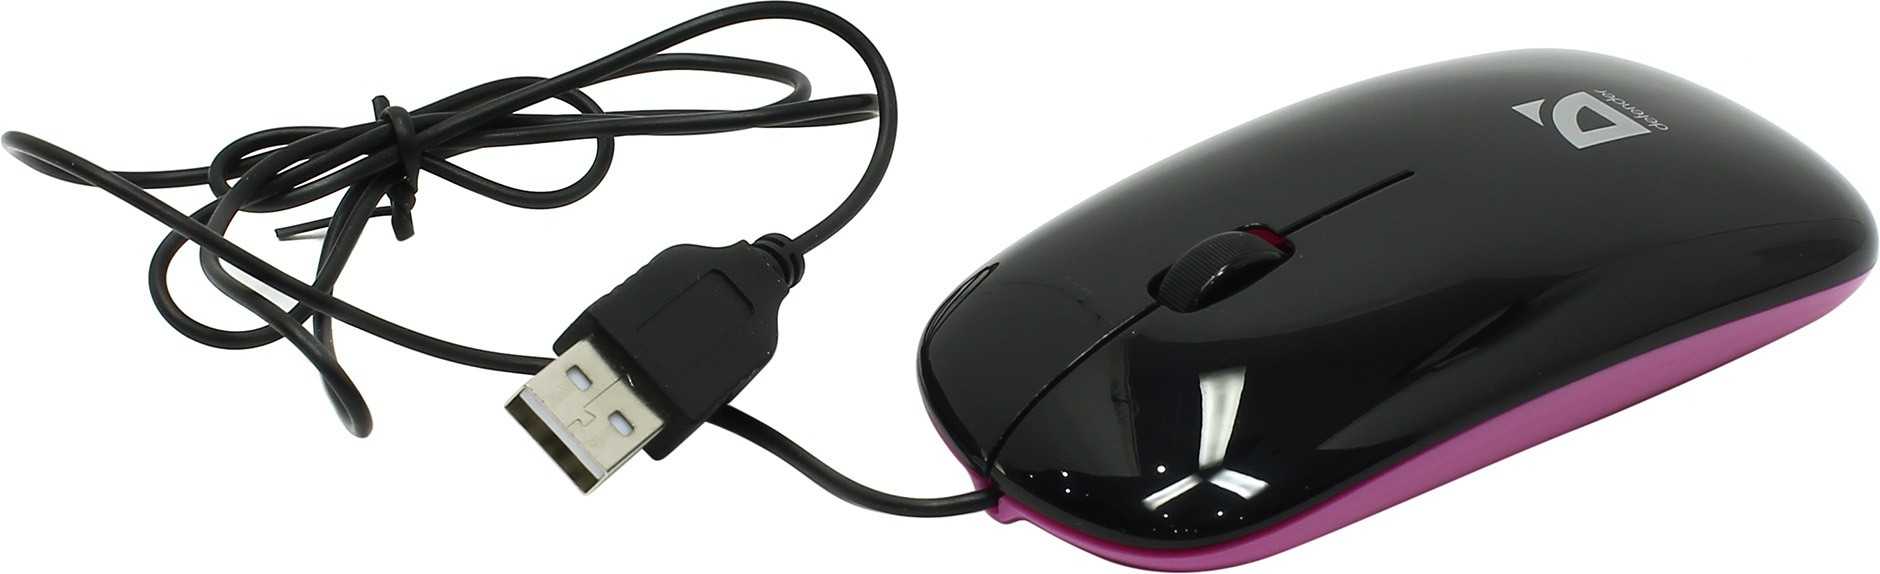 Defender netsprinter 440 bv black-violet usb (черный/фиолетовый) - купить , скидки, цена, отзывы, обзор, характеристики - мыши